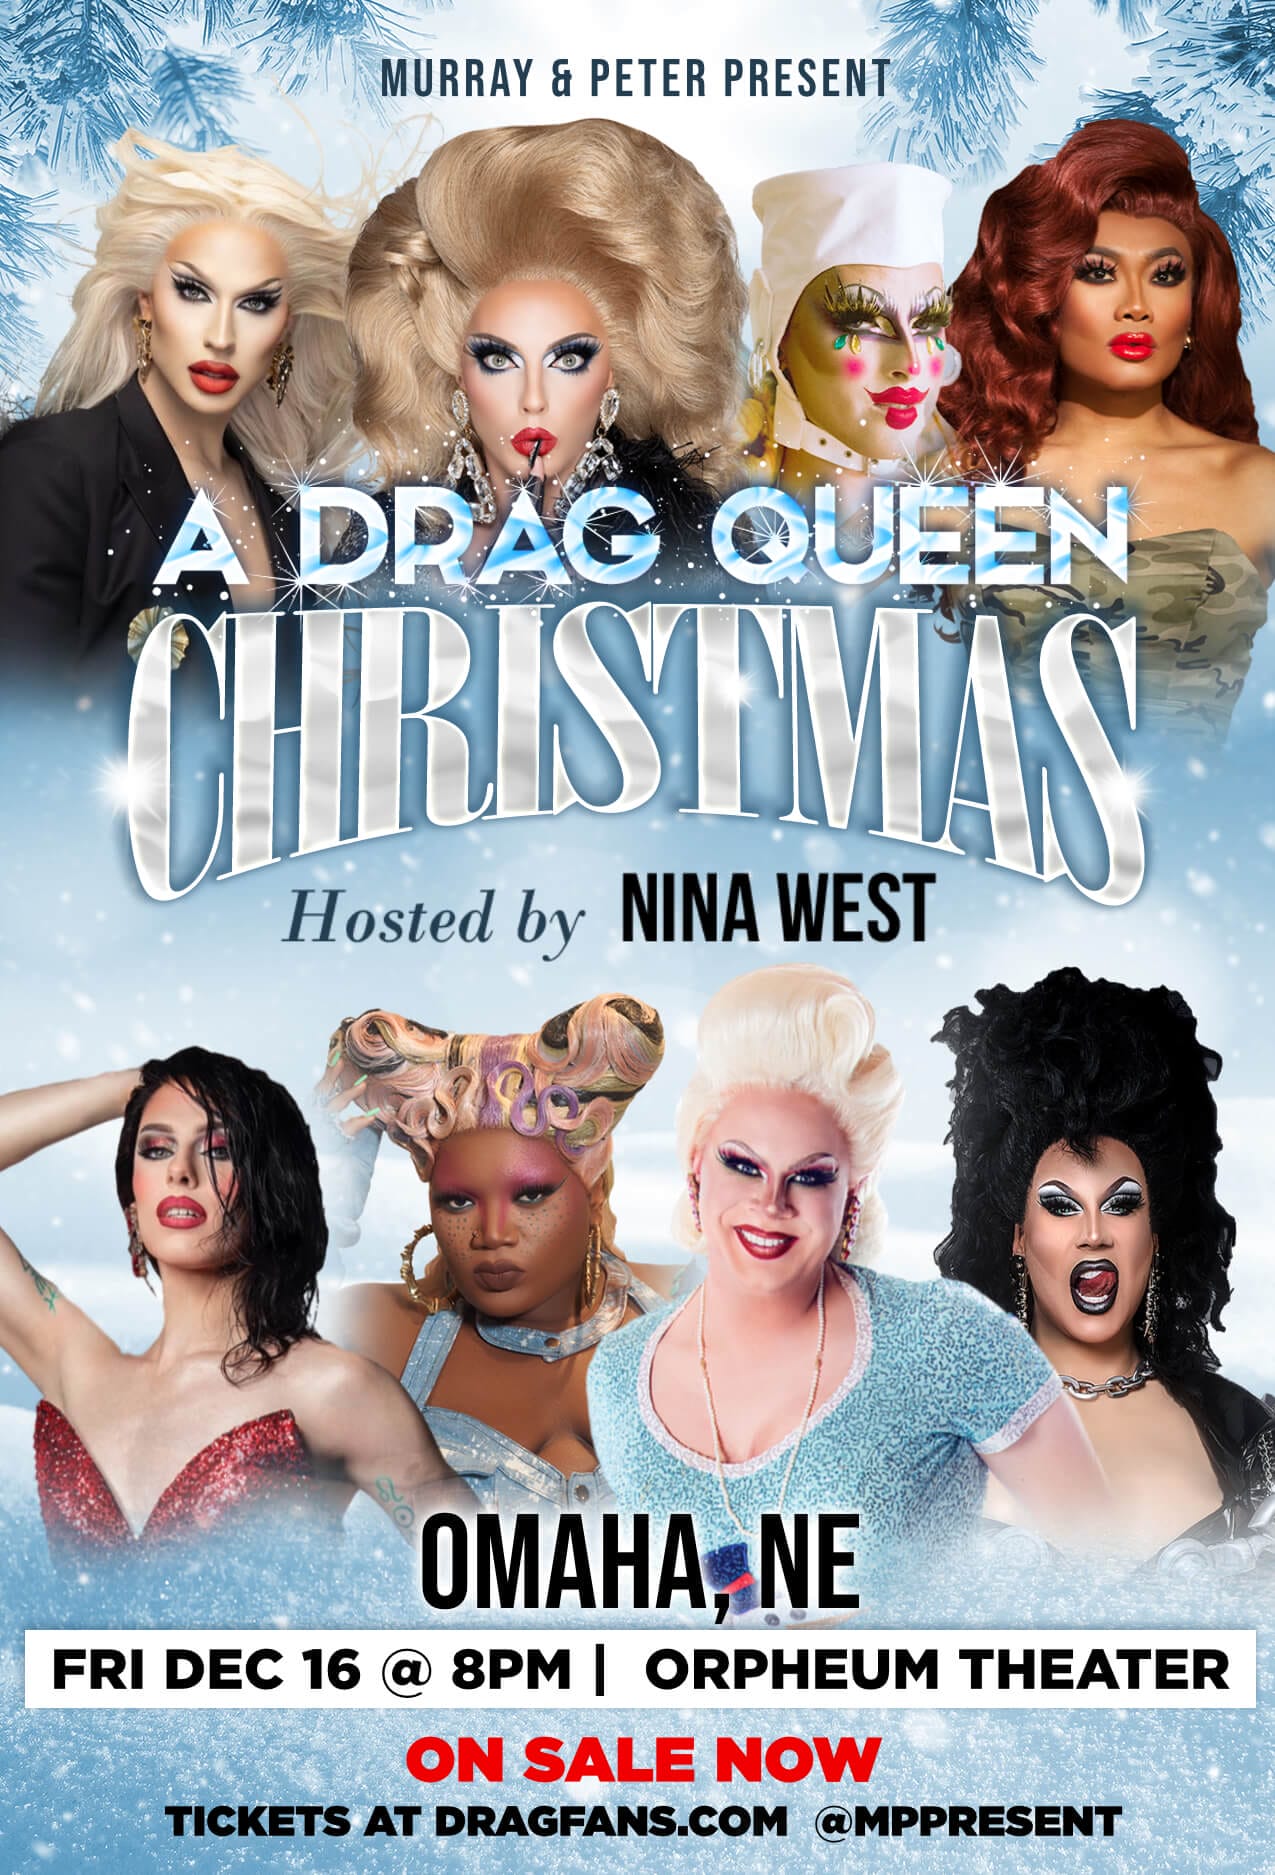 drag queen christmas tour 2022